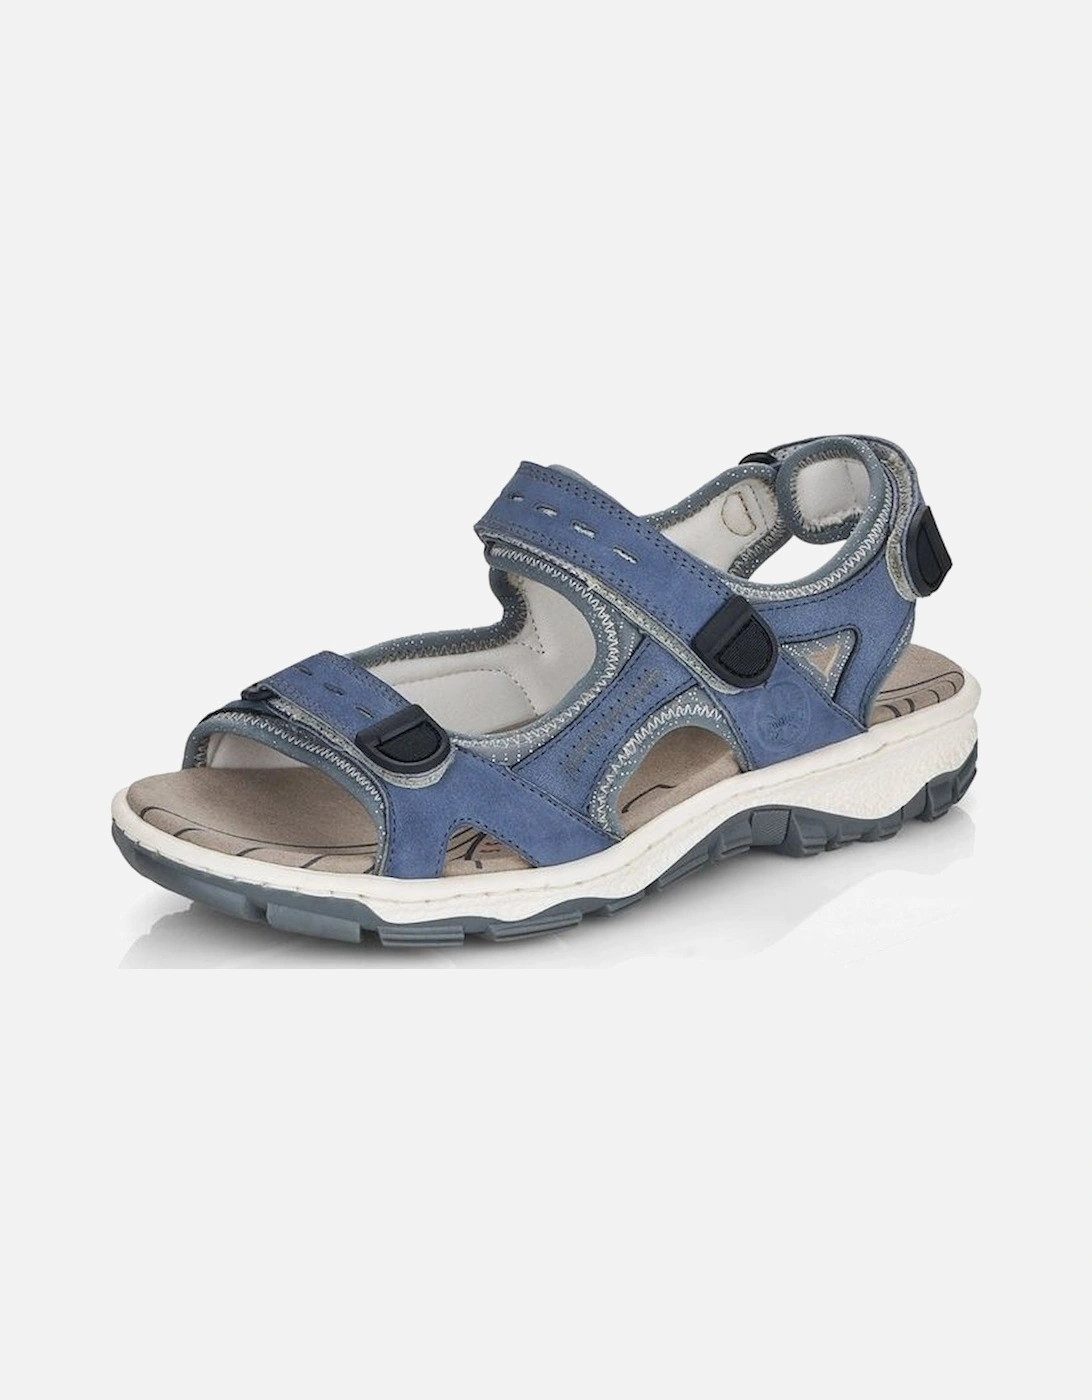 Ladies Walking Sandals 68874 14 Blue, 2 of 1